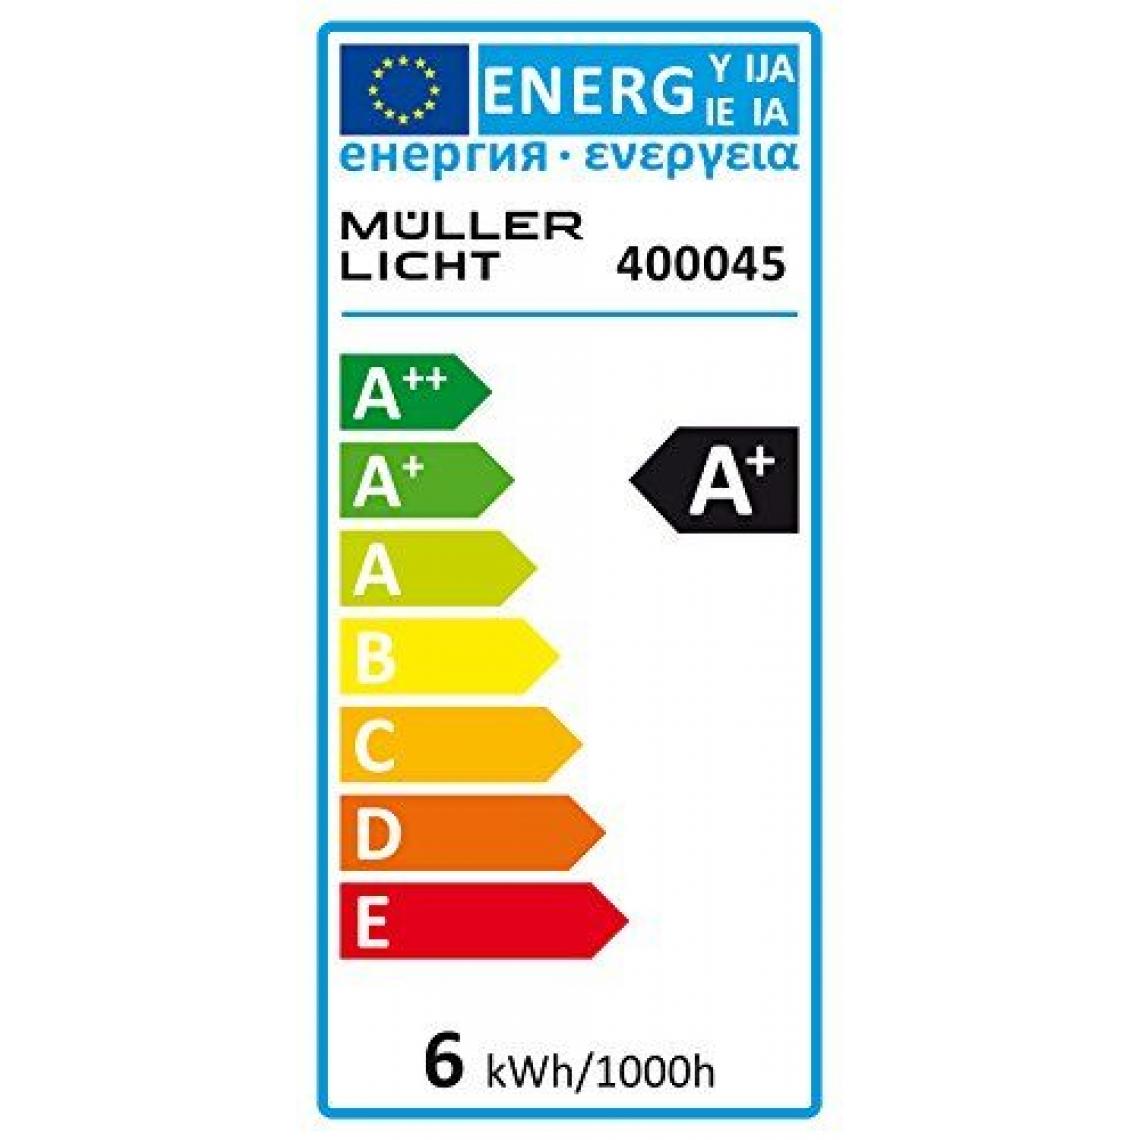 Inconnu - Müller-Licht 400045 A +, lampe LED encastrable et réglette, plastique, 6 watts, GX53, blanc, 2,5 x 7,5 x 7,5 cm - Ampoules LED